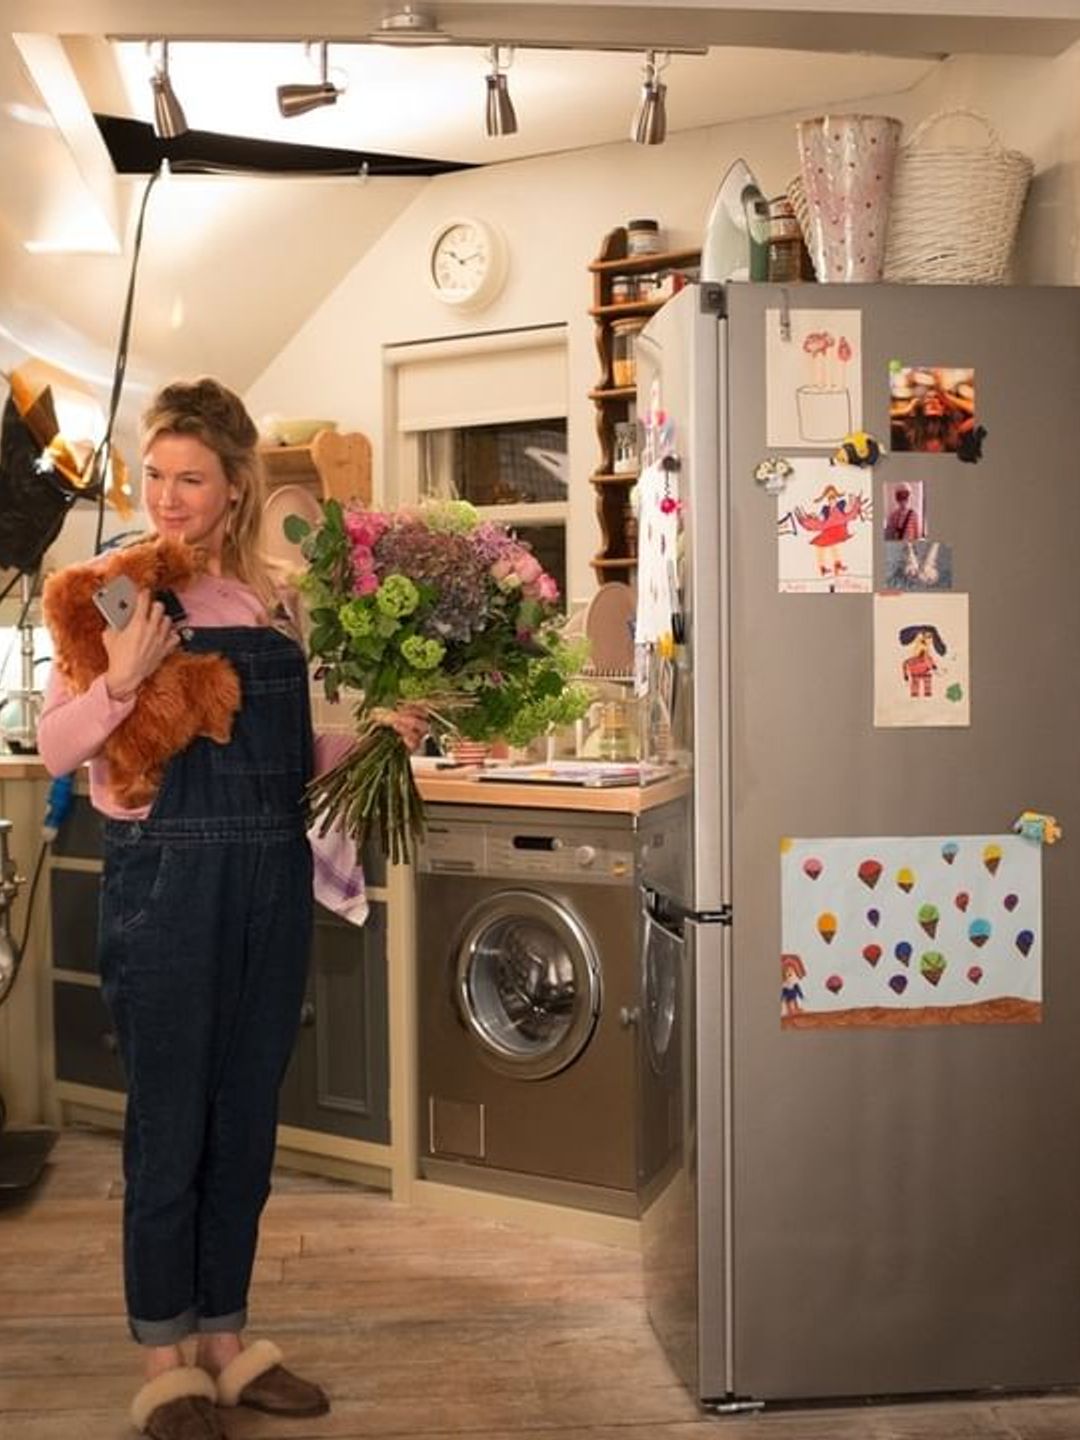 Bridget Jones stands in her kitchen holding flowers and wearing denim overalls 